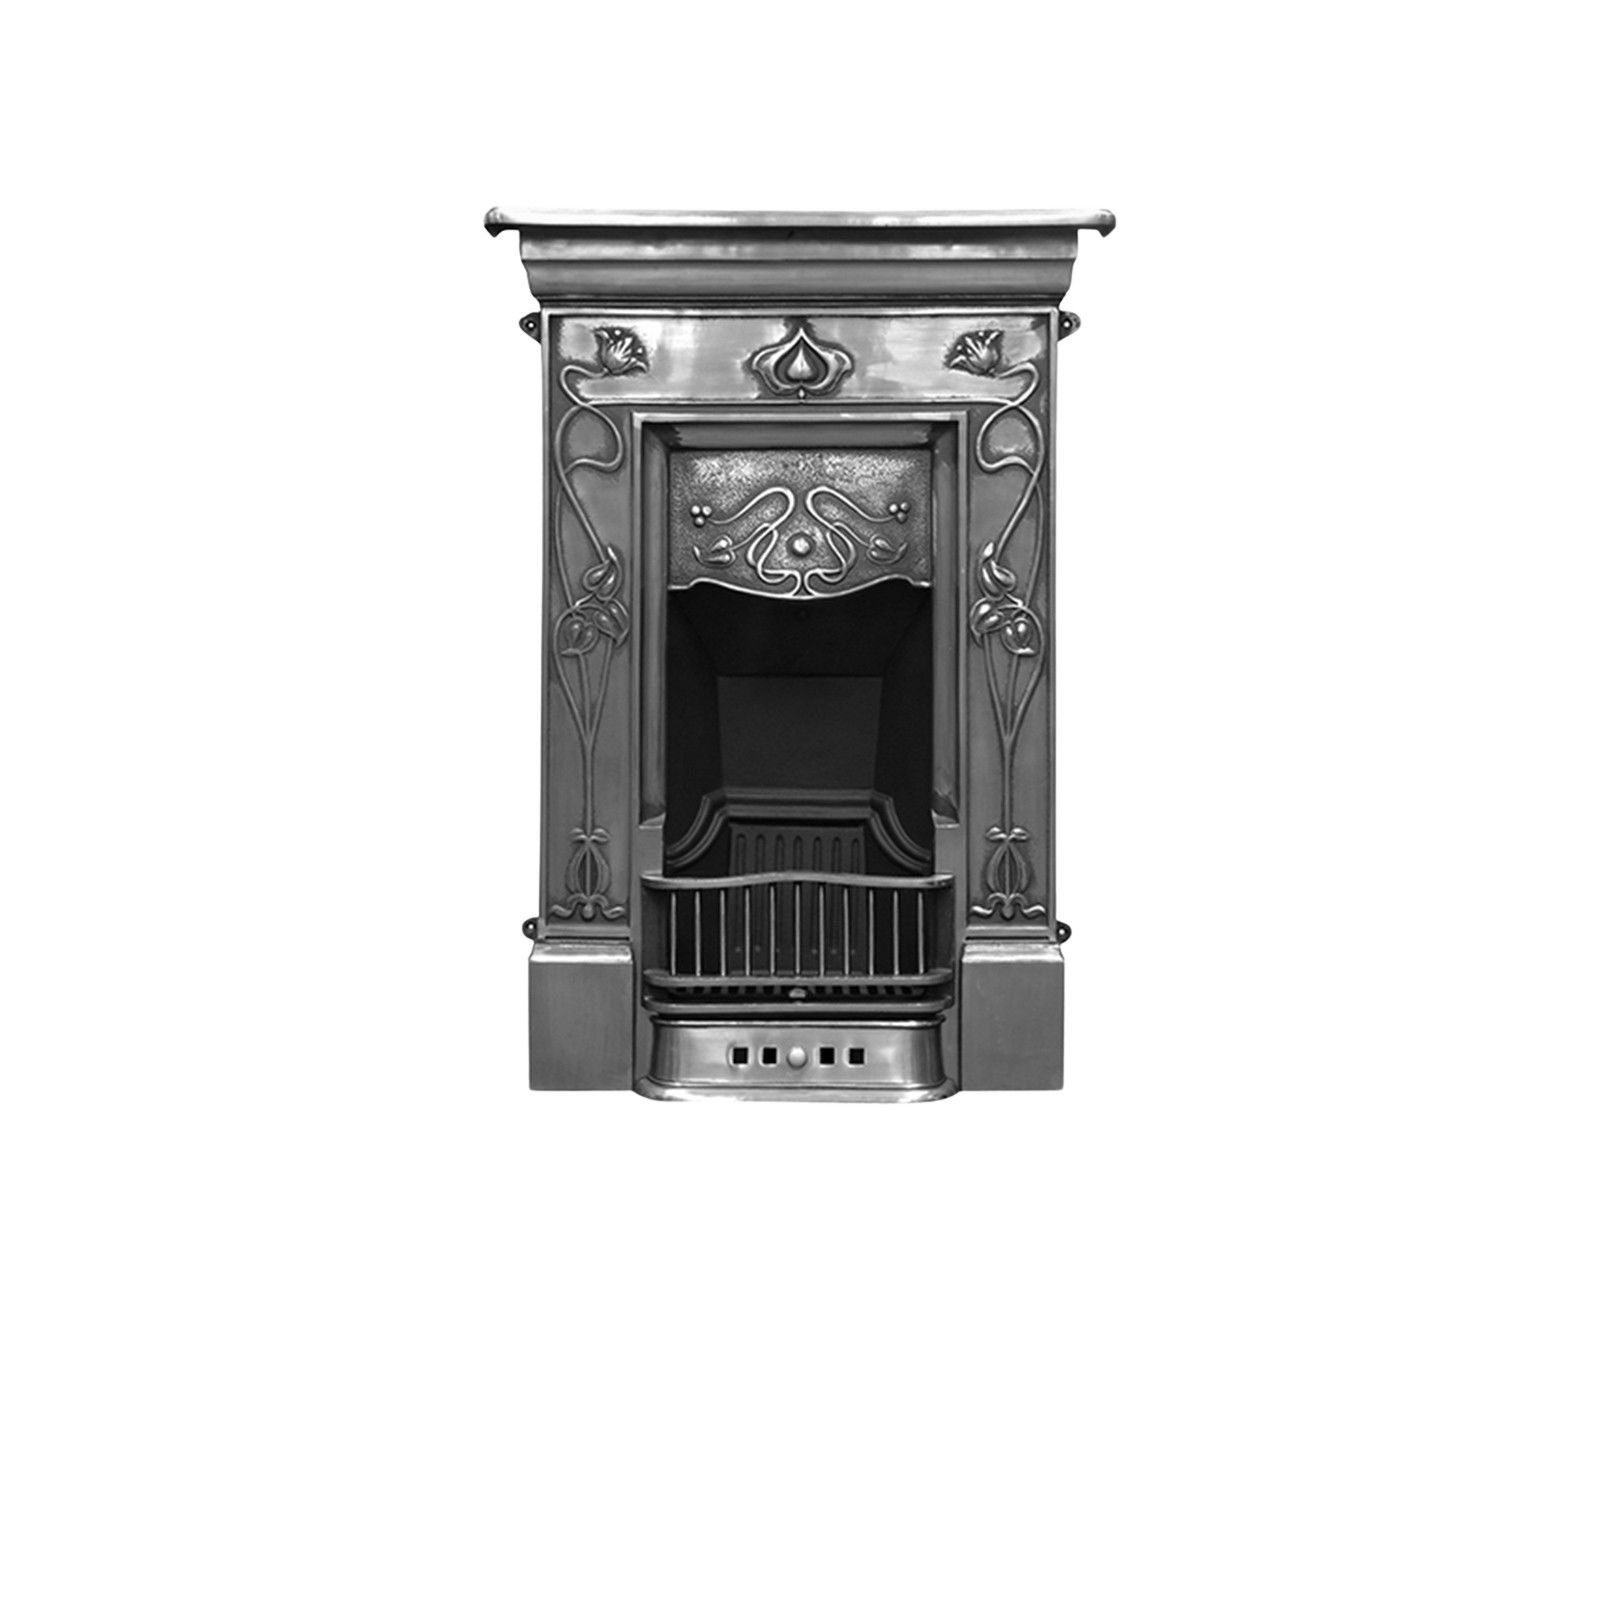 Crocus design cast iron fireplace